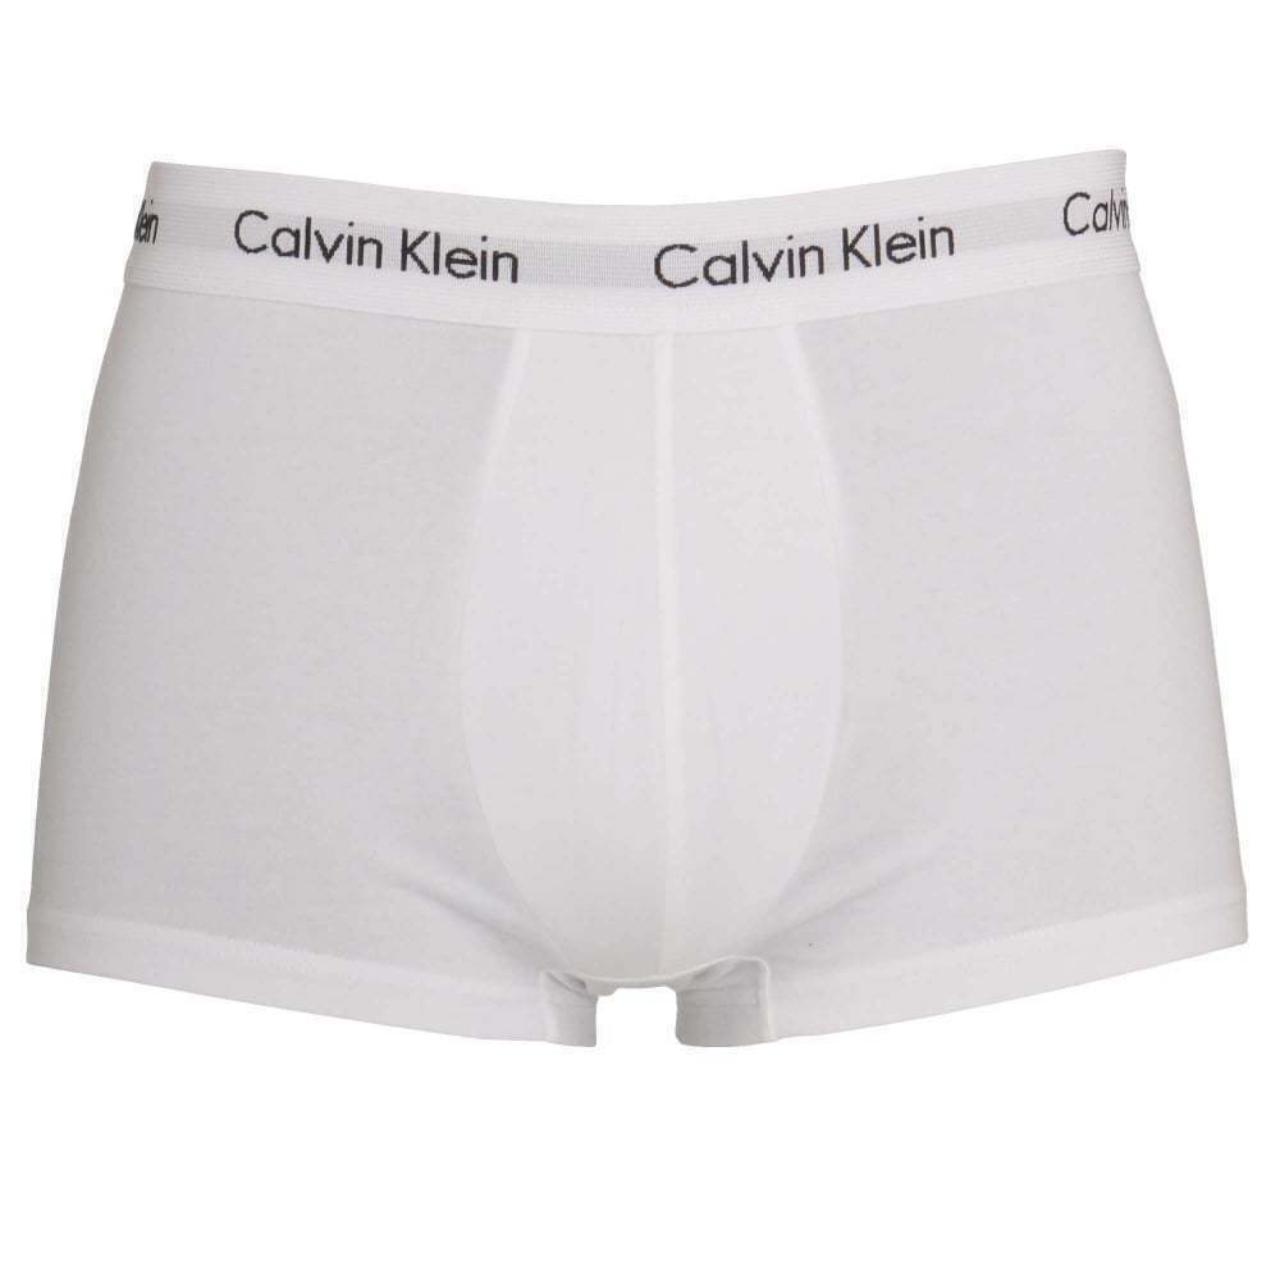 Calvin Klein Mens Underwear CK Boxer 3 in a Pack Low... - Depop